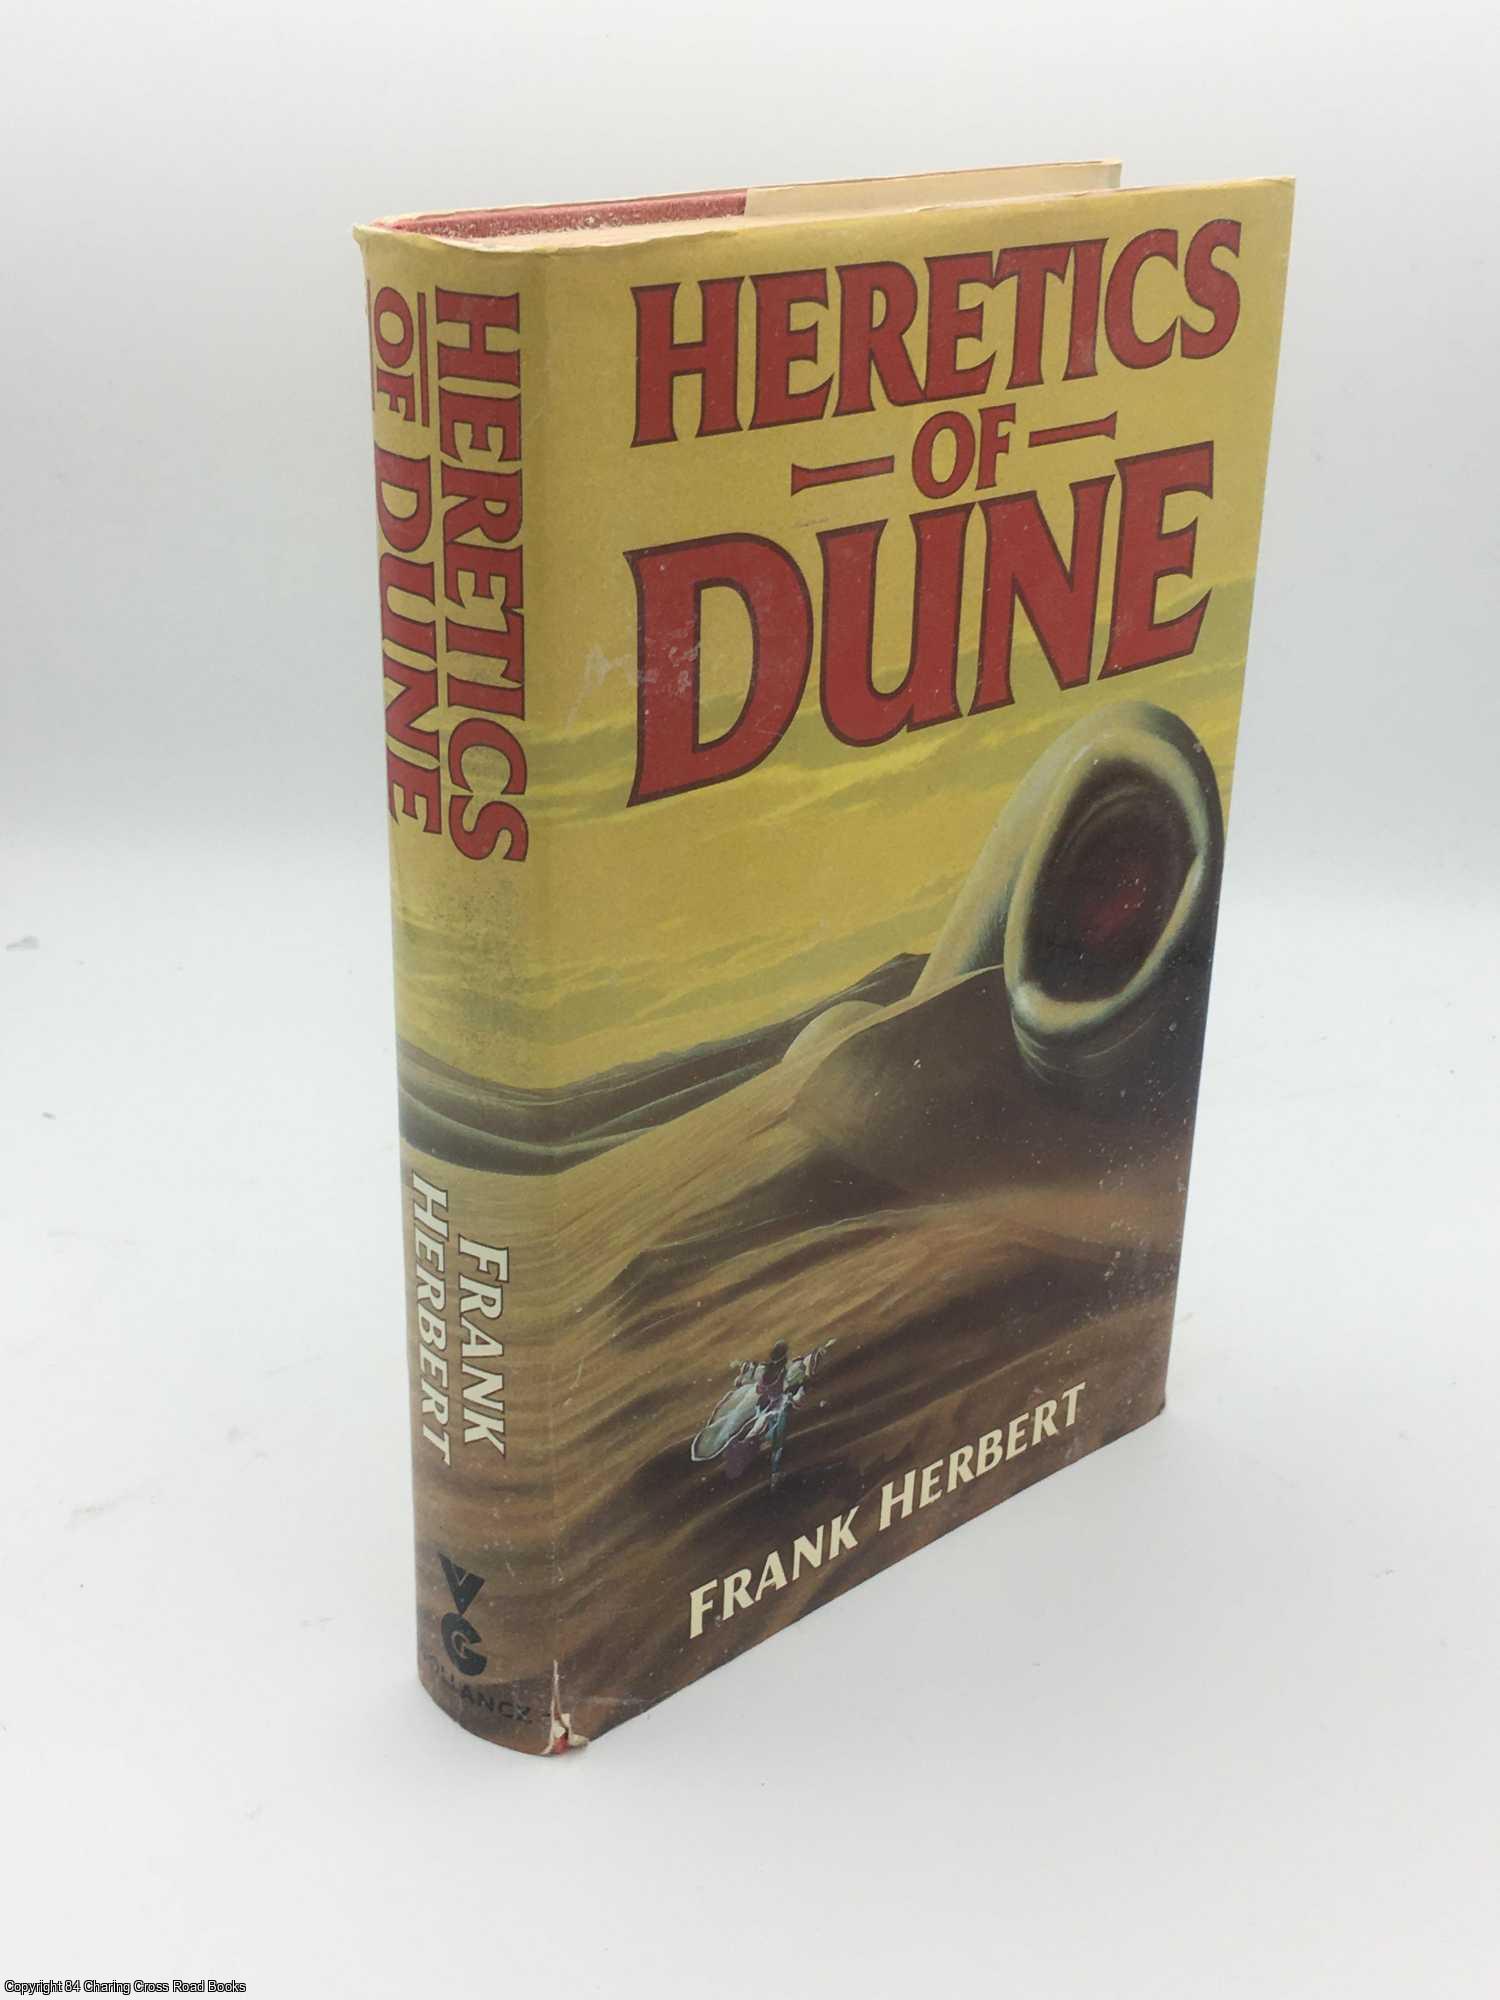 Herbert, Frank - Heretics of Dune